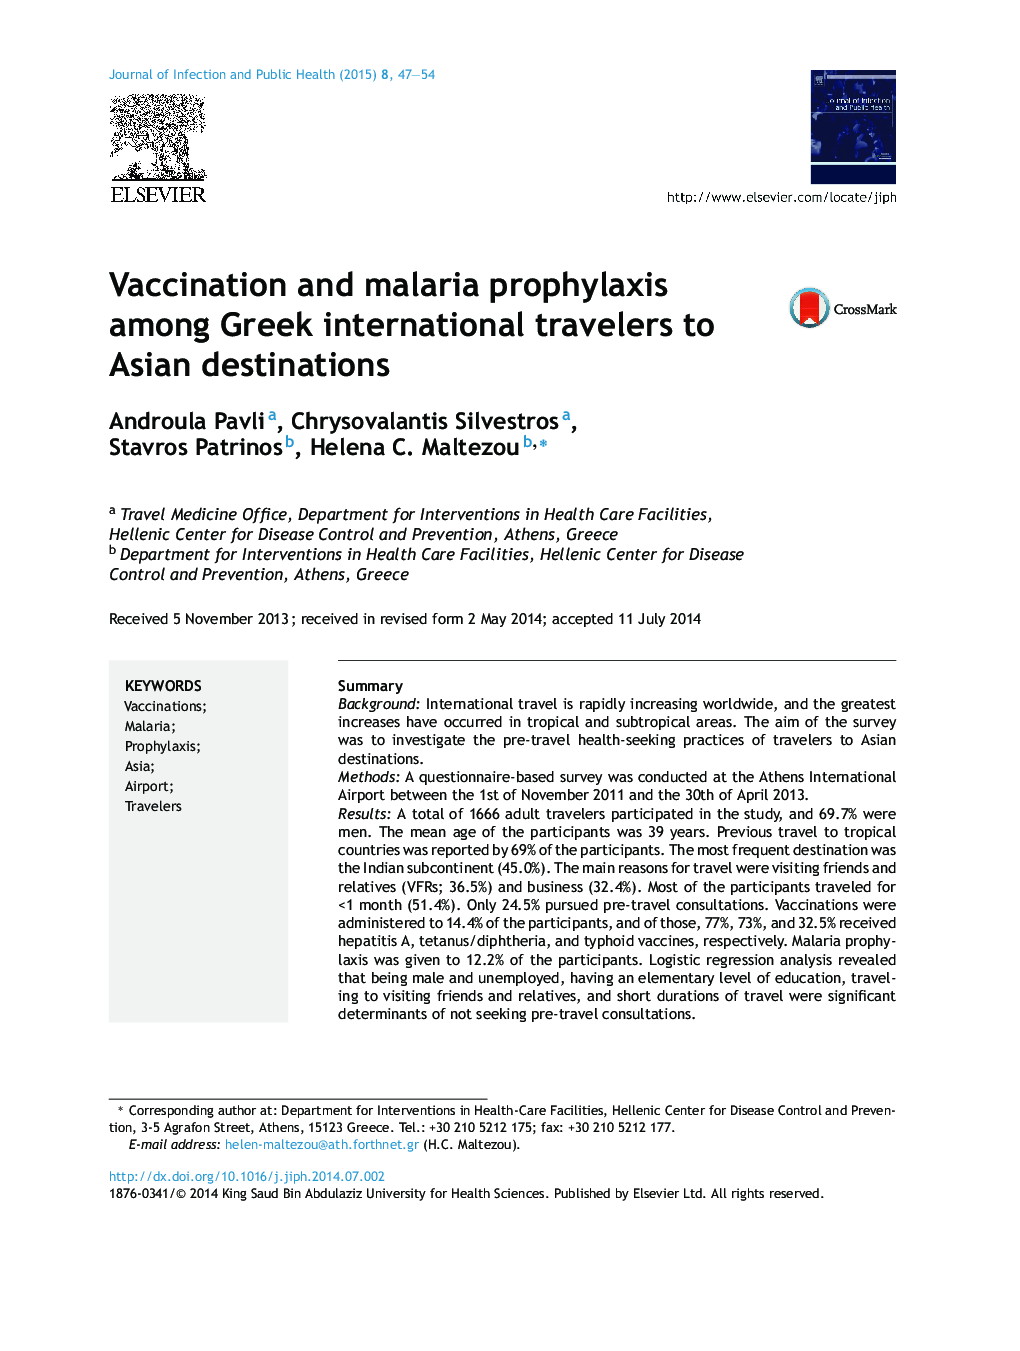 واکسیناسیون و پیشگیری از مالاریا در بین مسافران بین المللی یونان به مقصد آسیا 